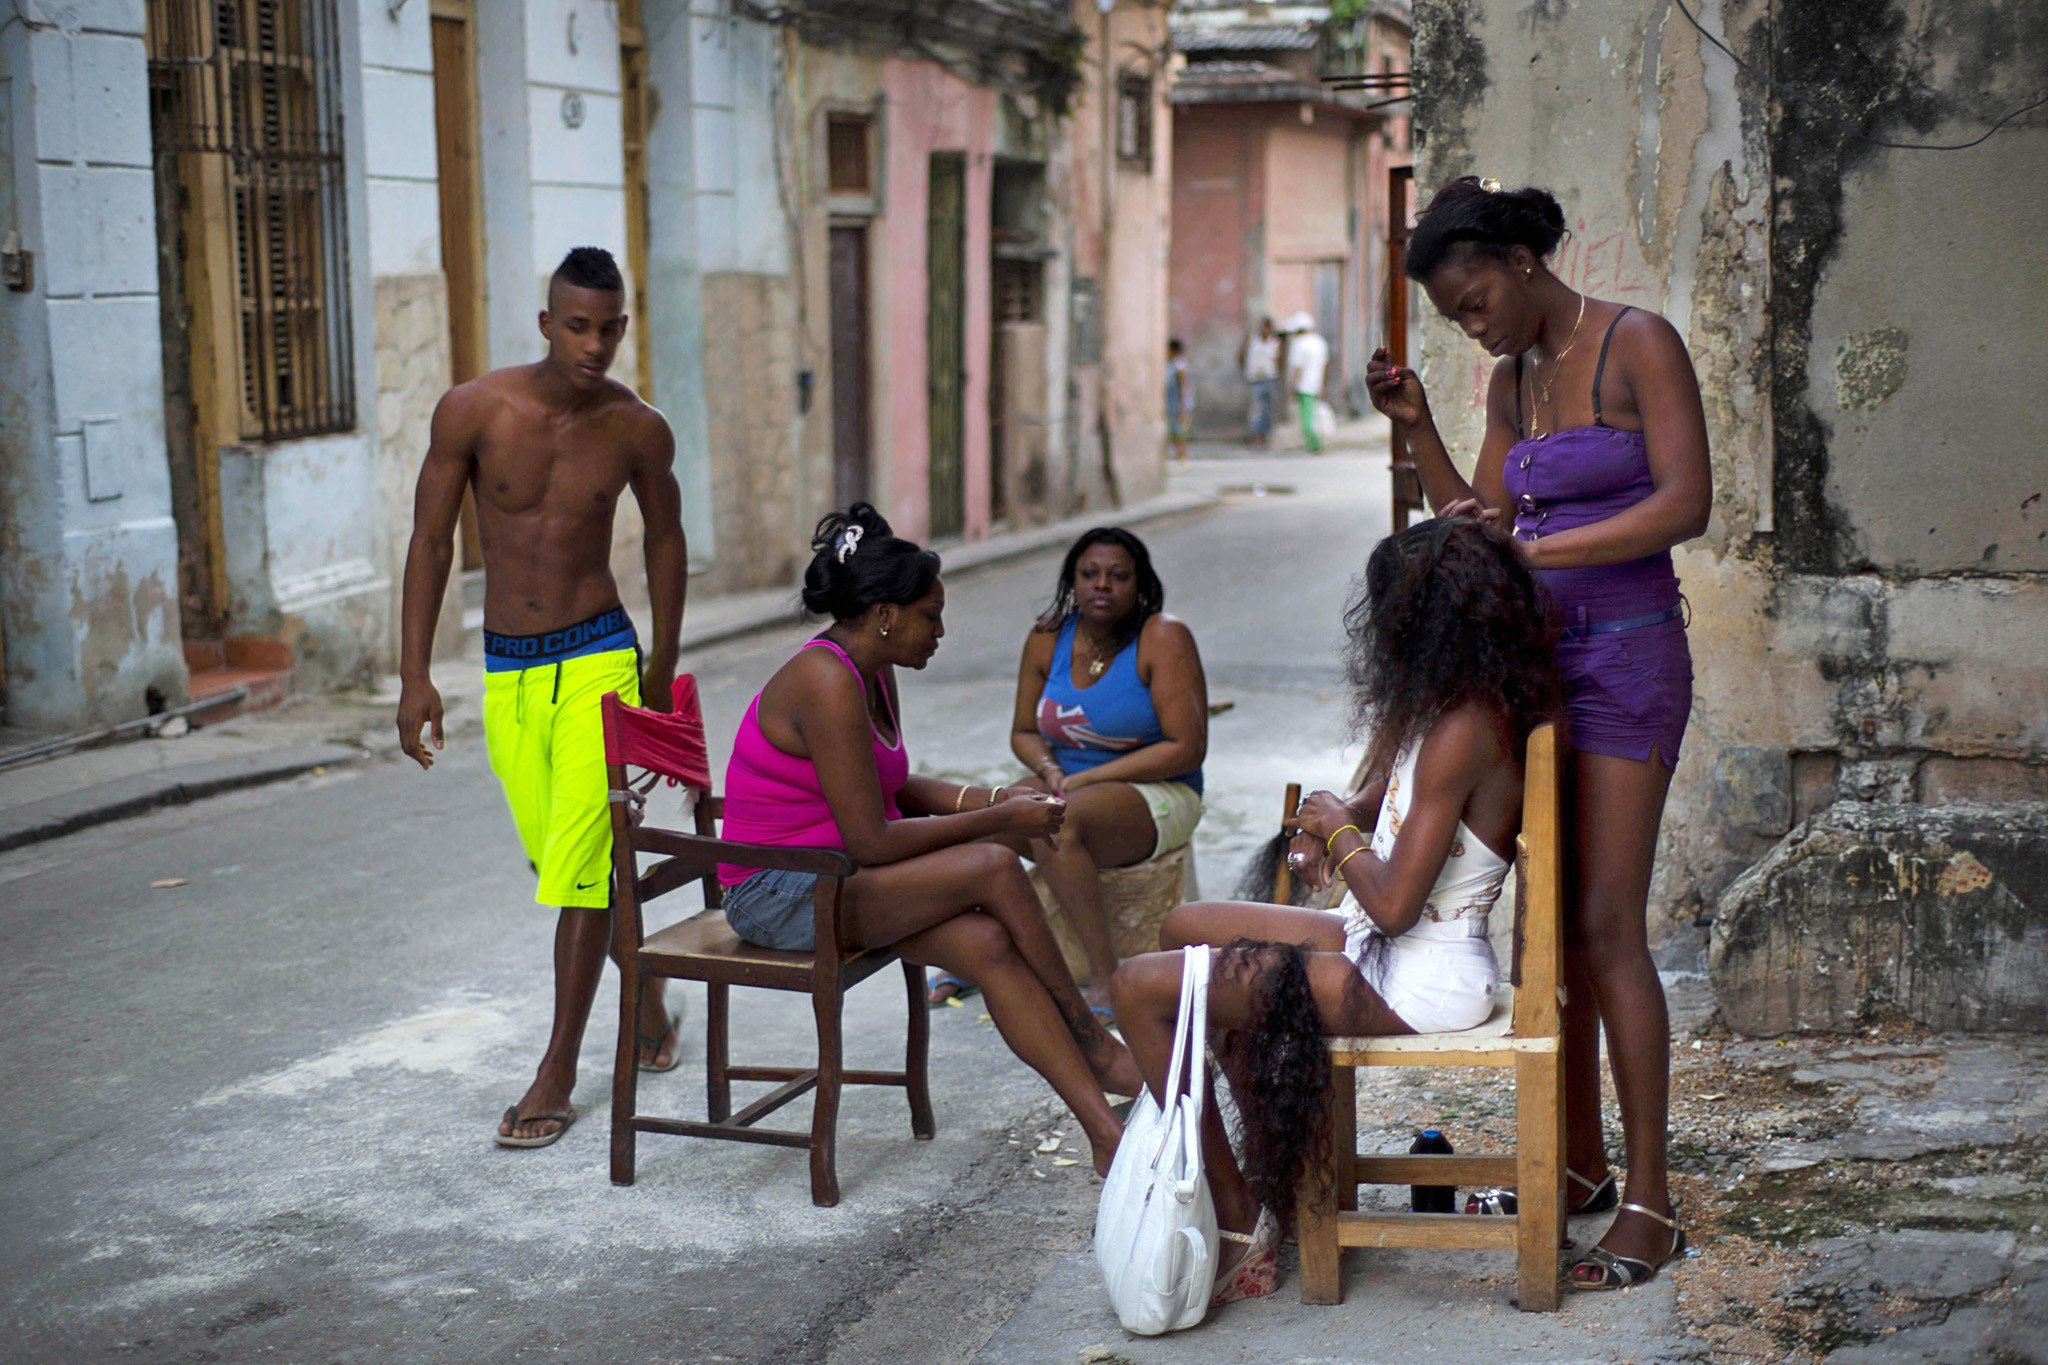 Sex In Cuba